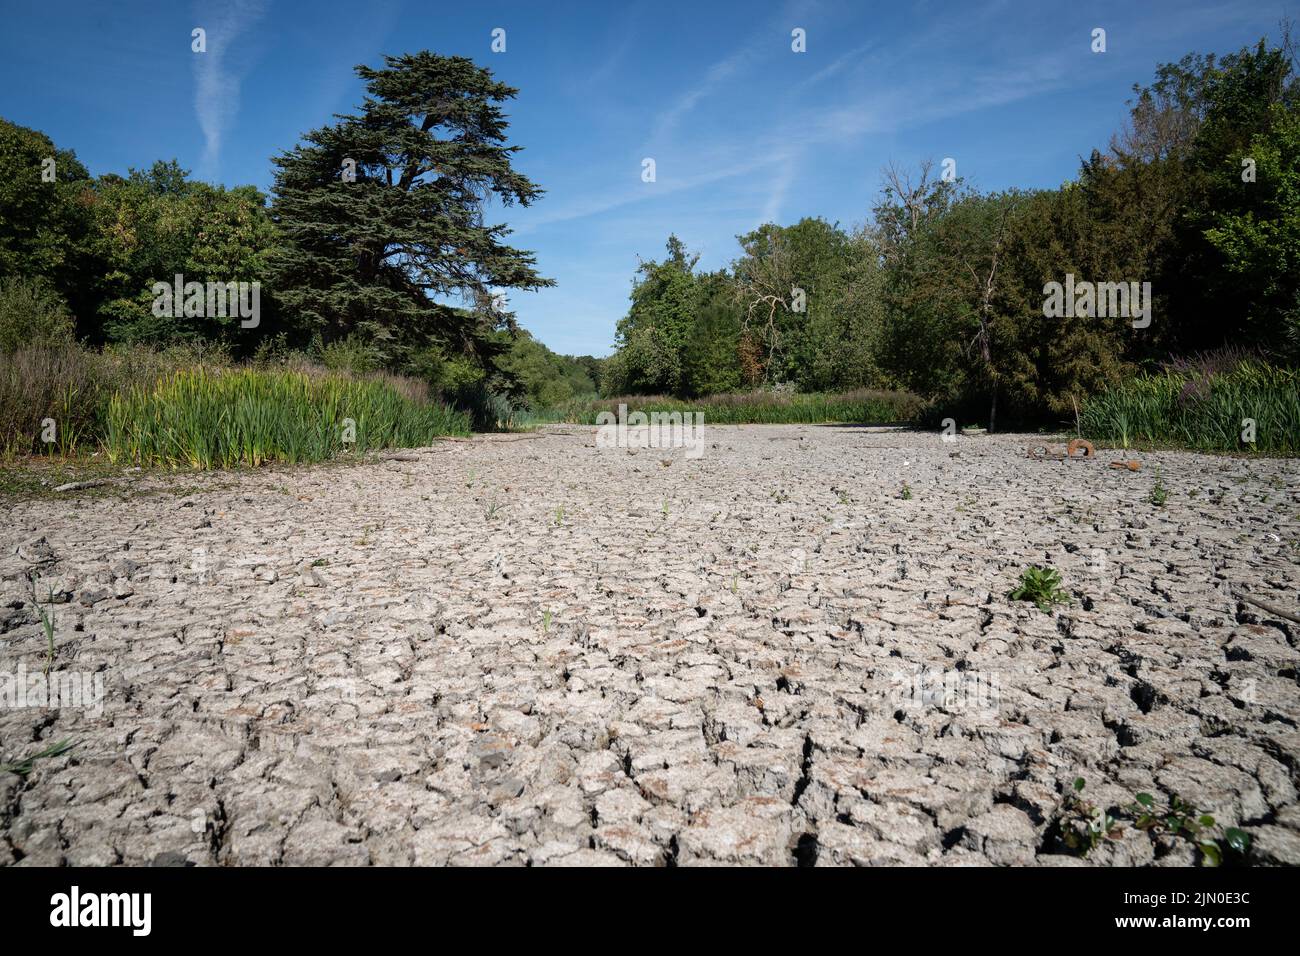 Un lago seco en Wanstead Park, al noreste de Londres hoy. Gran Bretaña está preparada para otra ola de calor que durará más que el período de calor récord de julio, con máximos de hasta 35C que se esperan la próxima semana. Fecha de la foto: Lunes 8 de agosto de 2022. Foto de stock